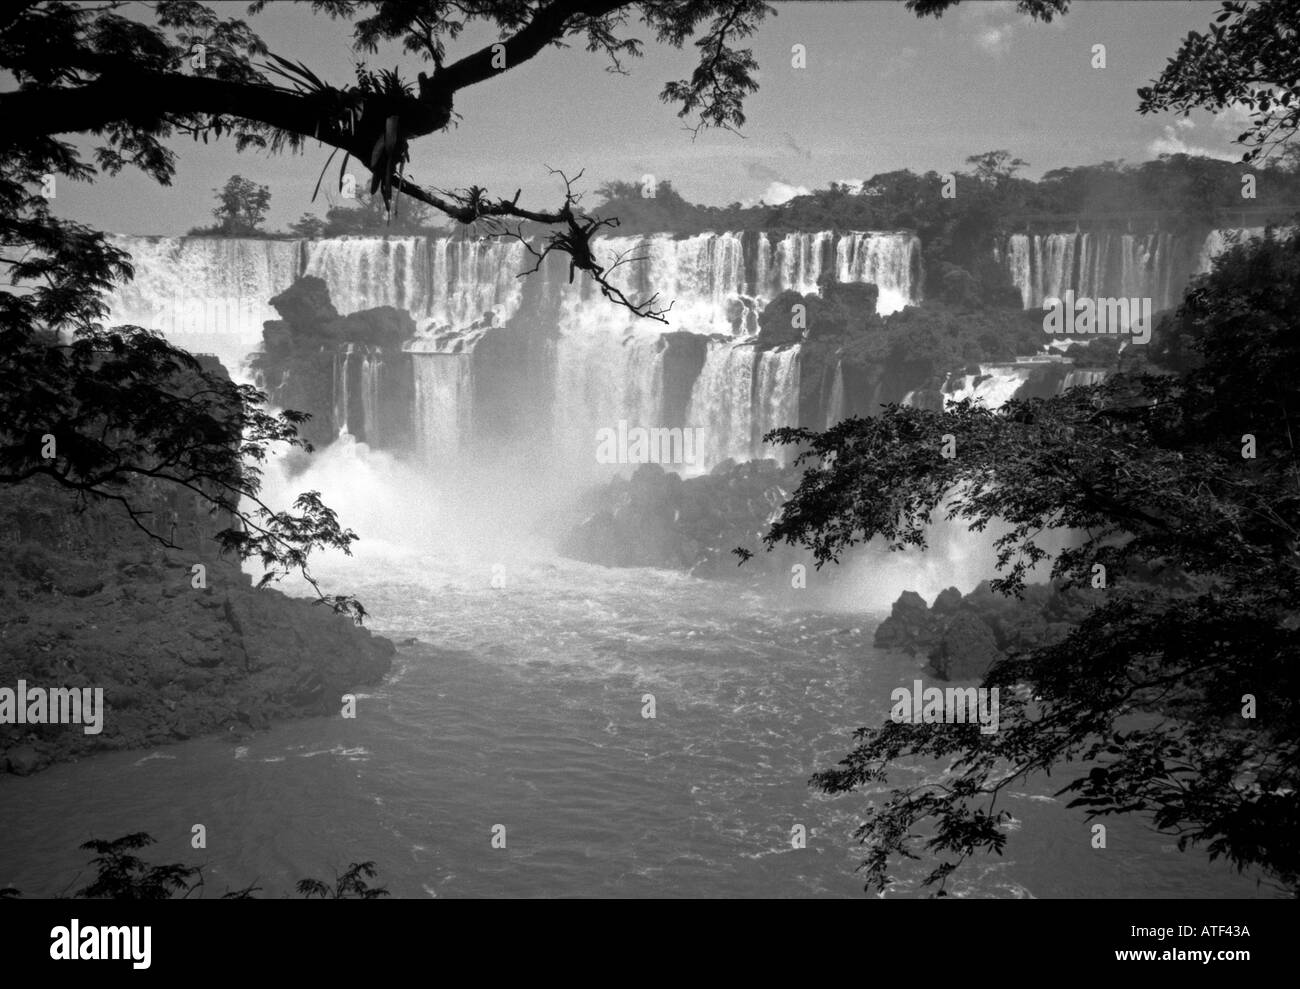 Puissant impétueux big énorme superbe magnifique cascade d'eau marron Foz do Iguazu Argentine Amérique Latine du Sud Banque D'Images